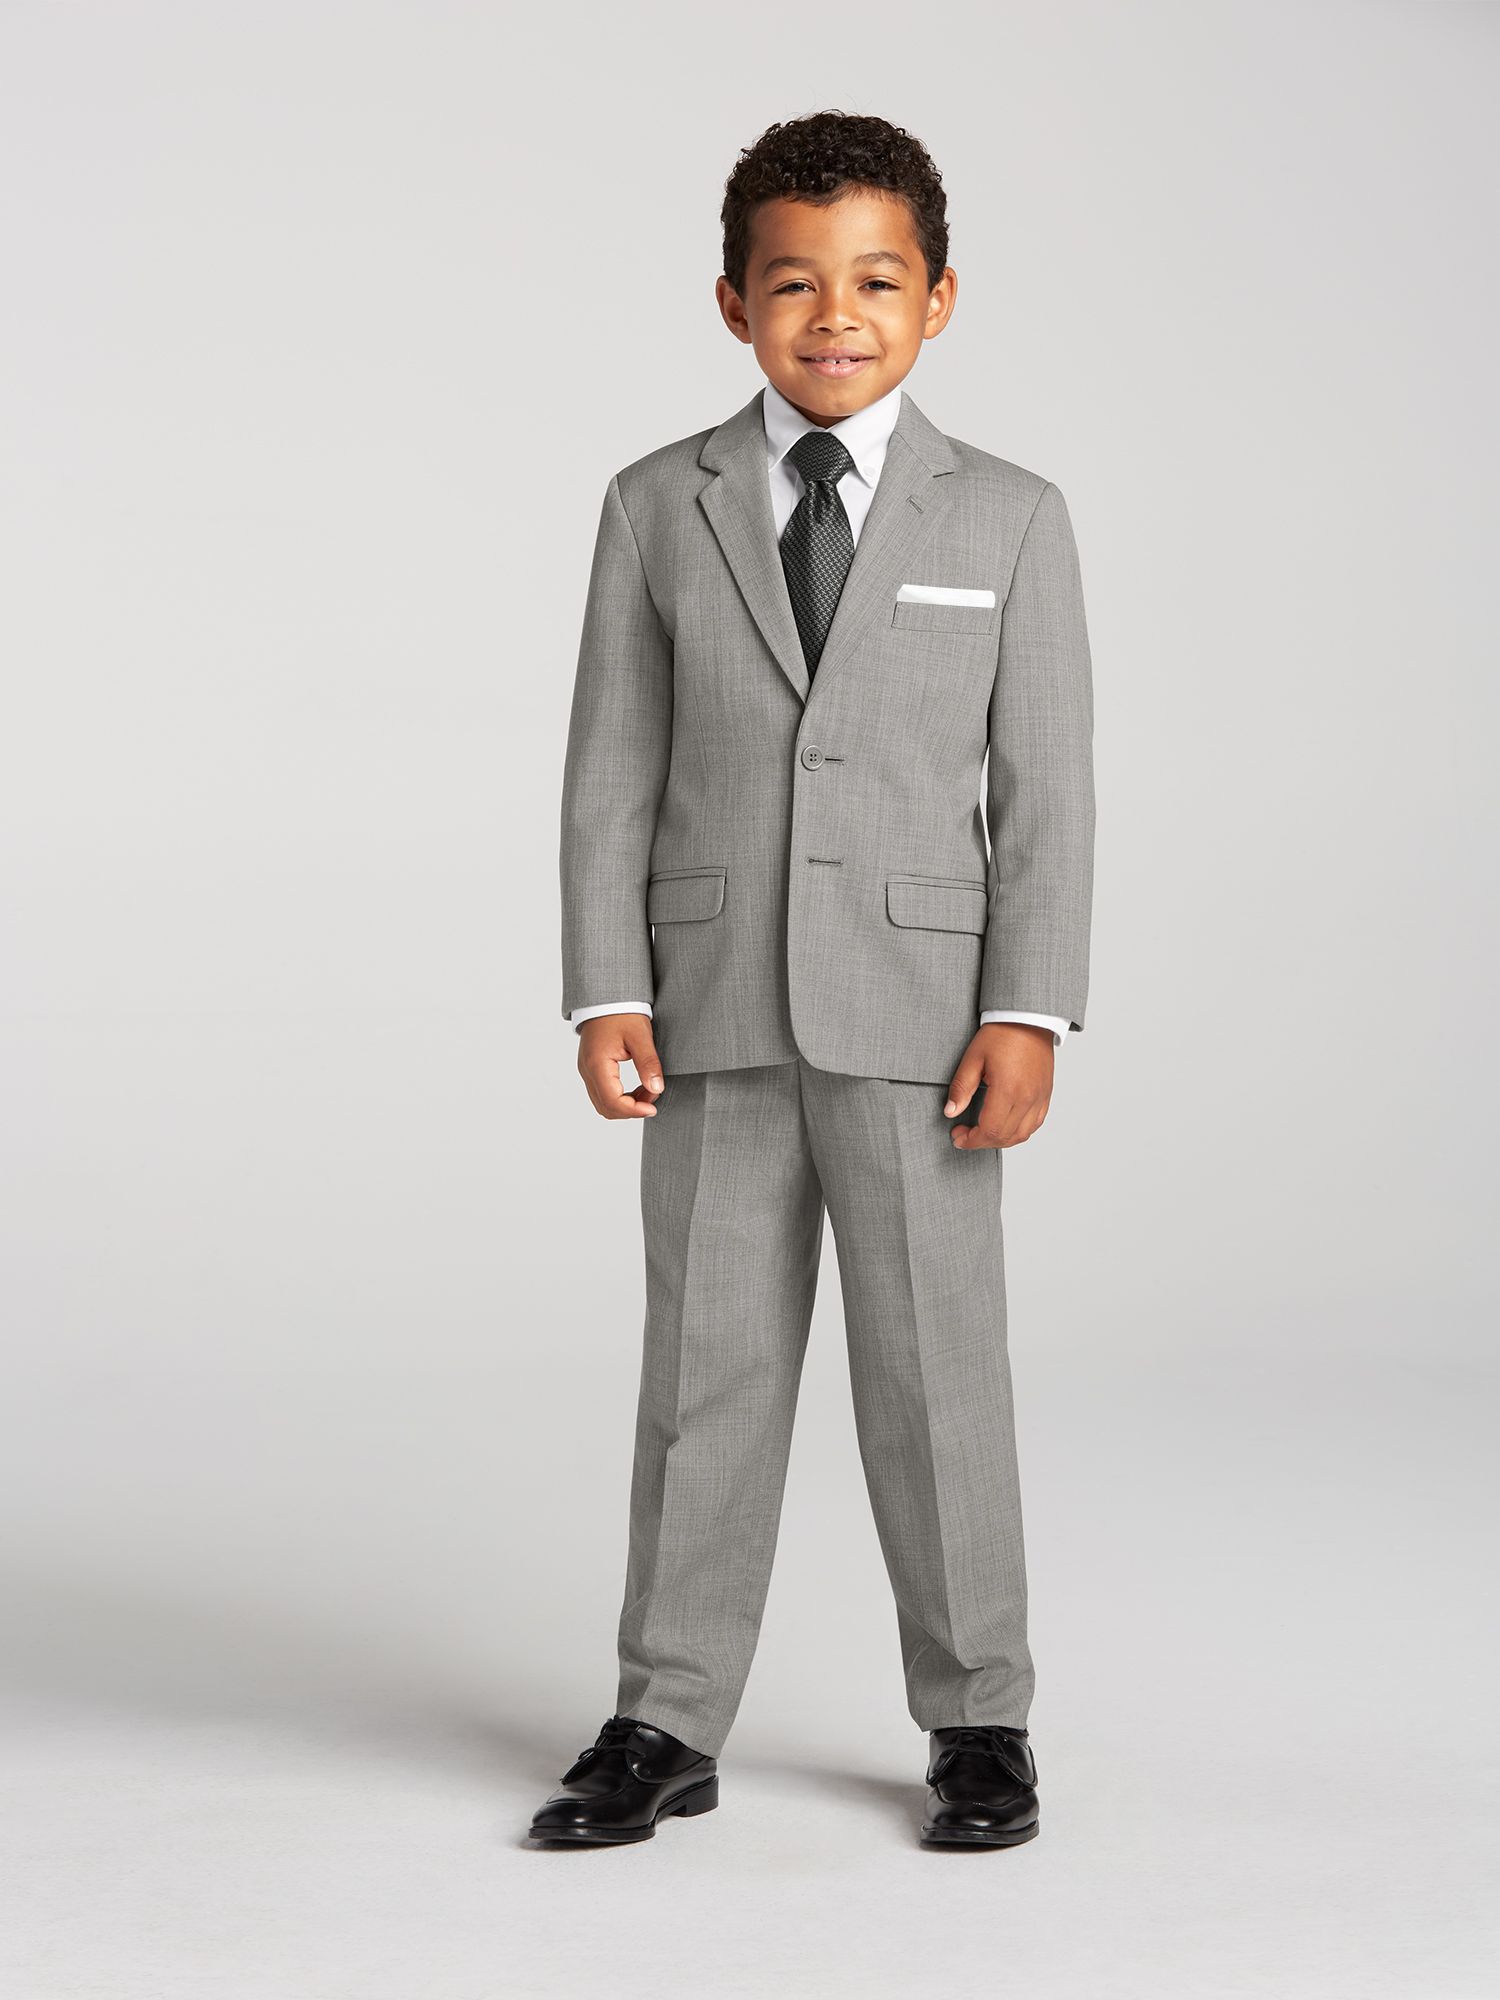 Boy's Gray Suit Rental by Joseph & Feiss | Men's Wearhouse